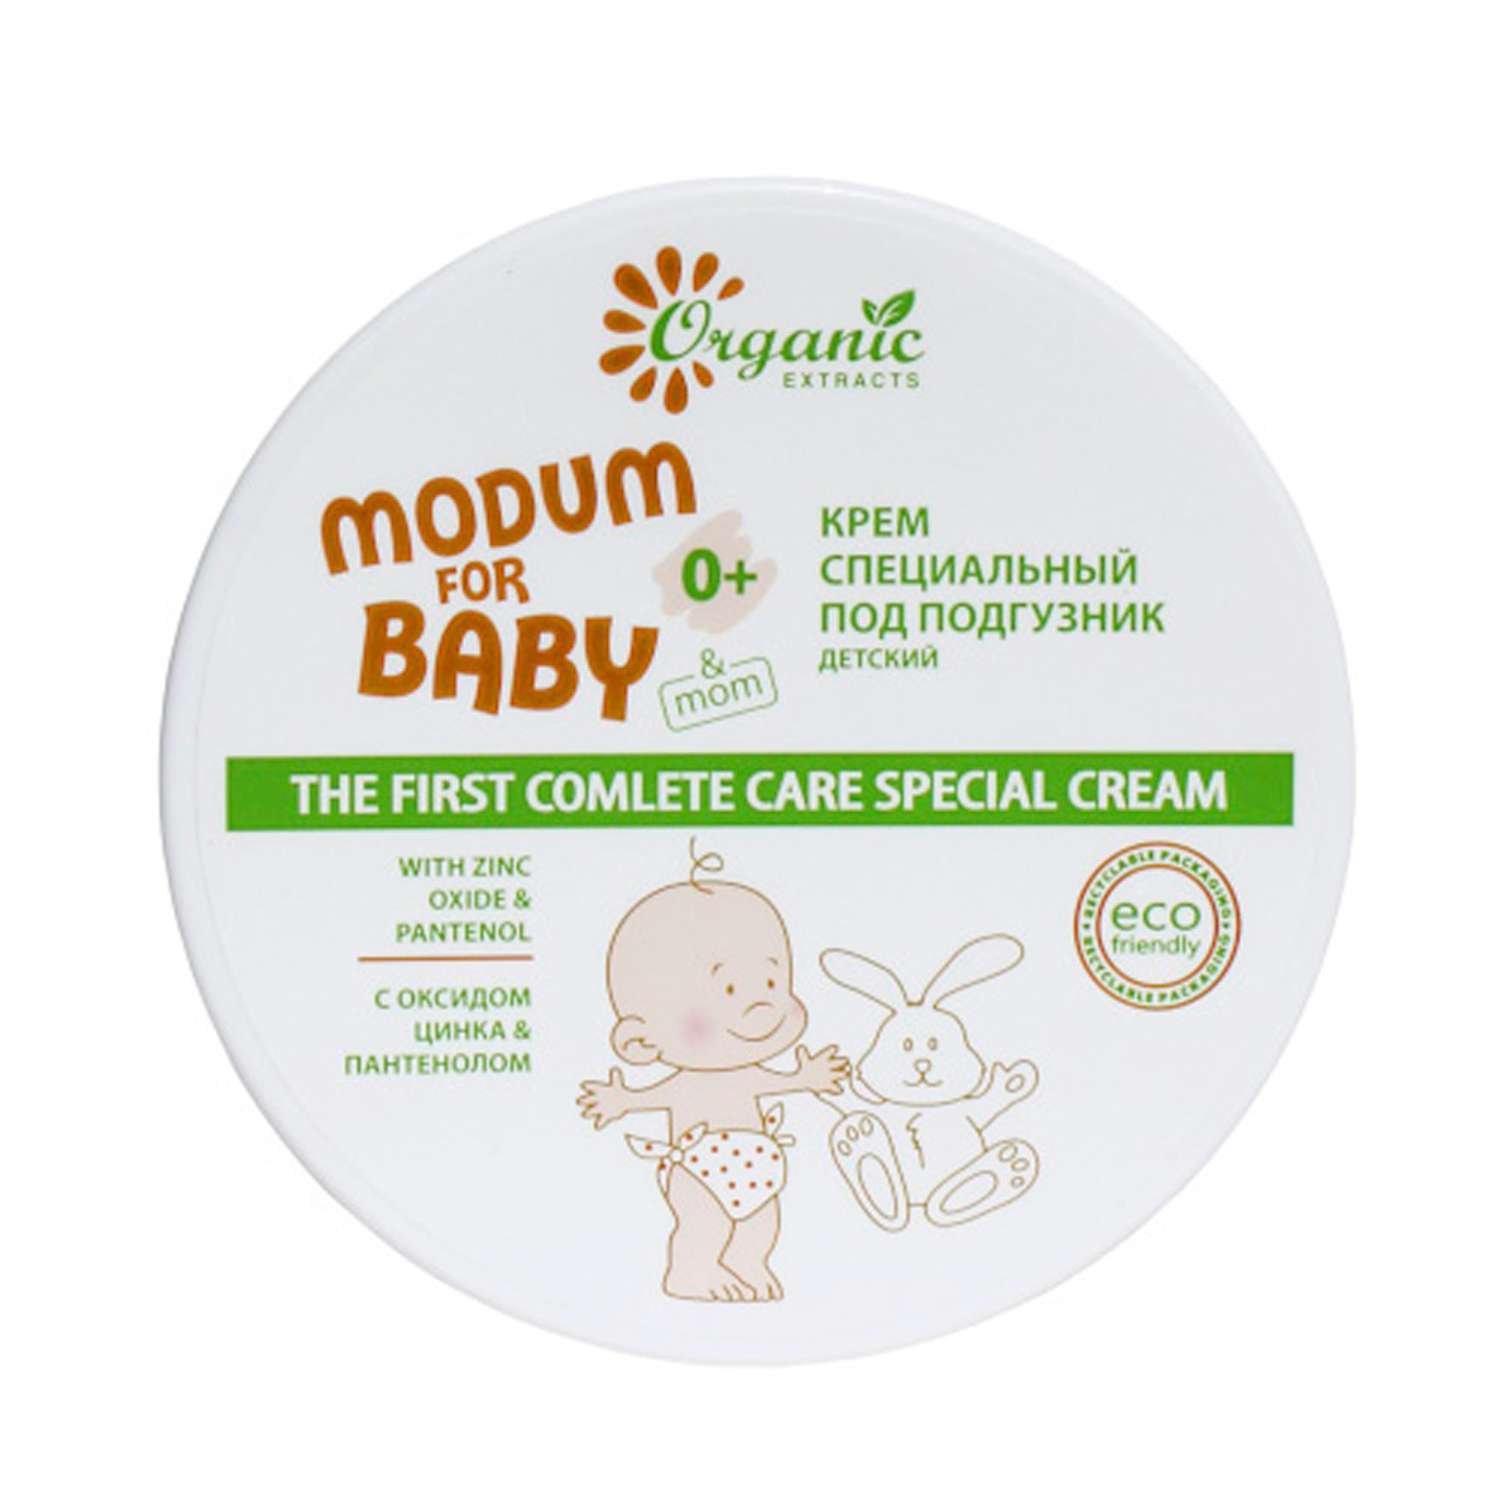 Крем под подгузник MODUM for baby специальный детский 0+ 120 мл - фото 1